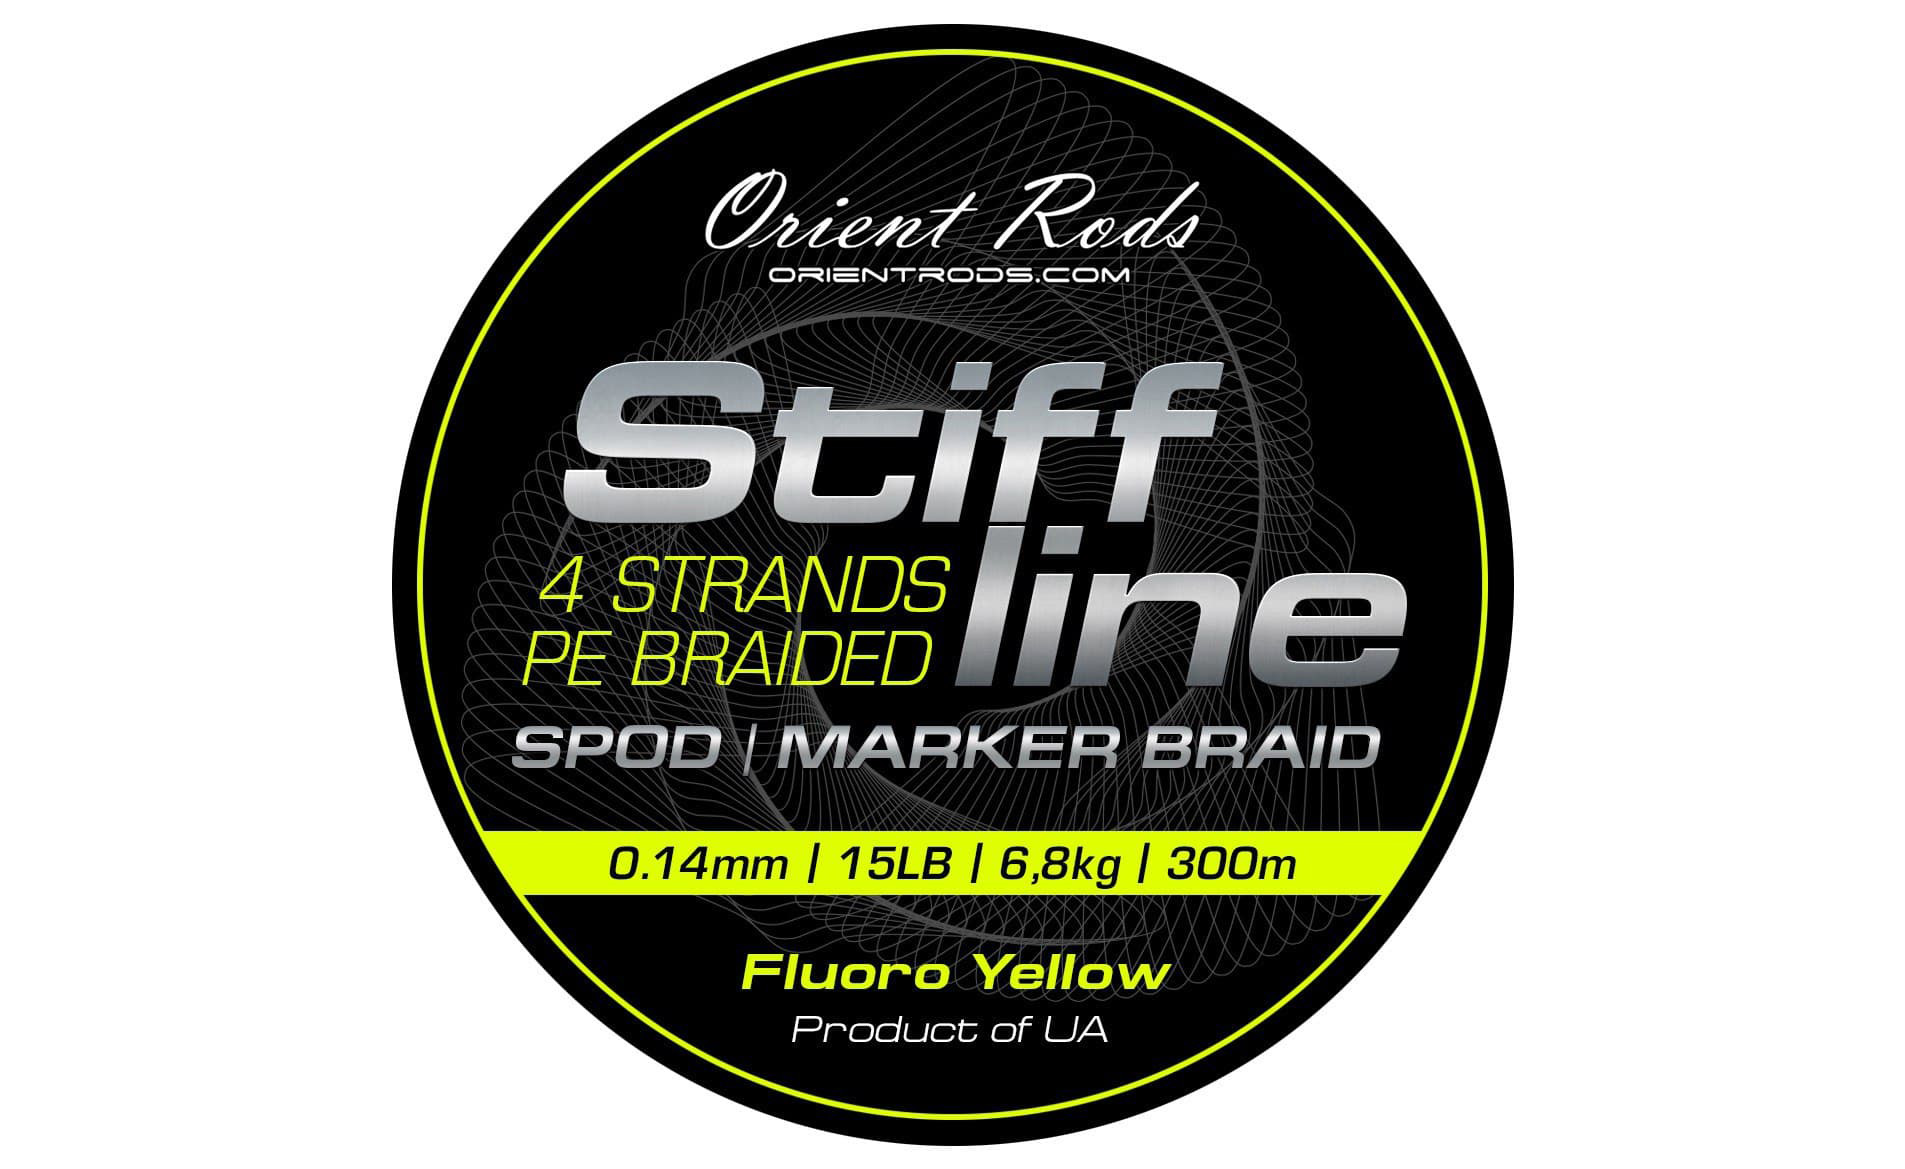 Stiff Line Orient Rods Spod/Marker Braid 300m 15lbs